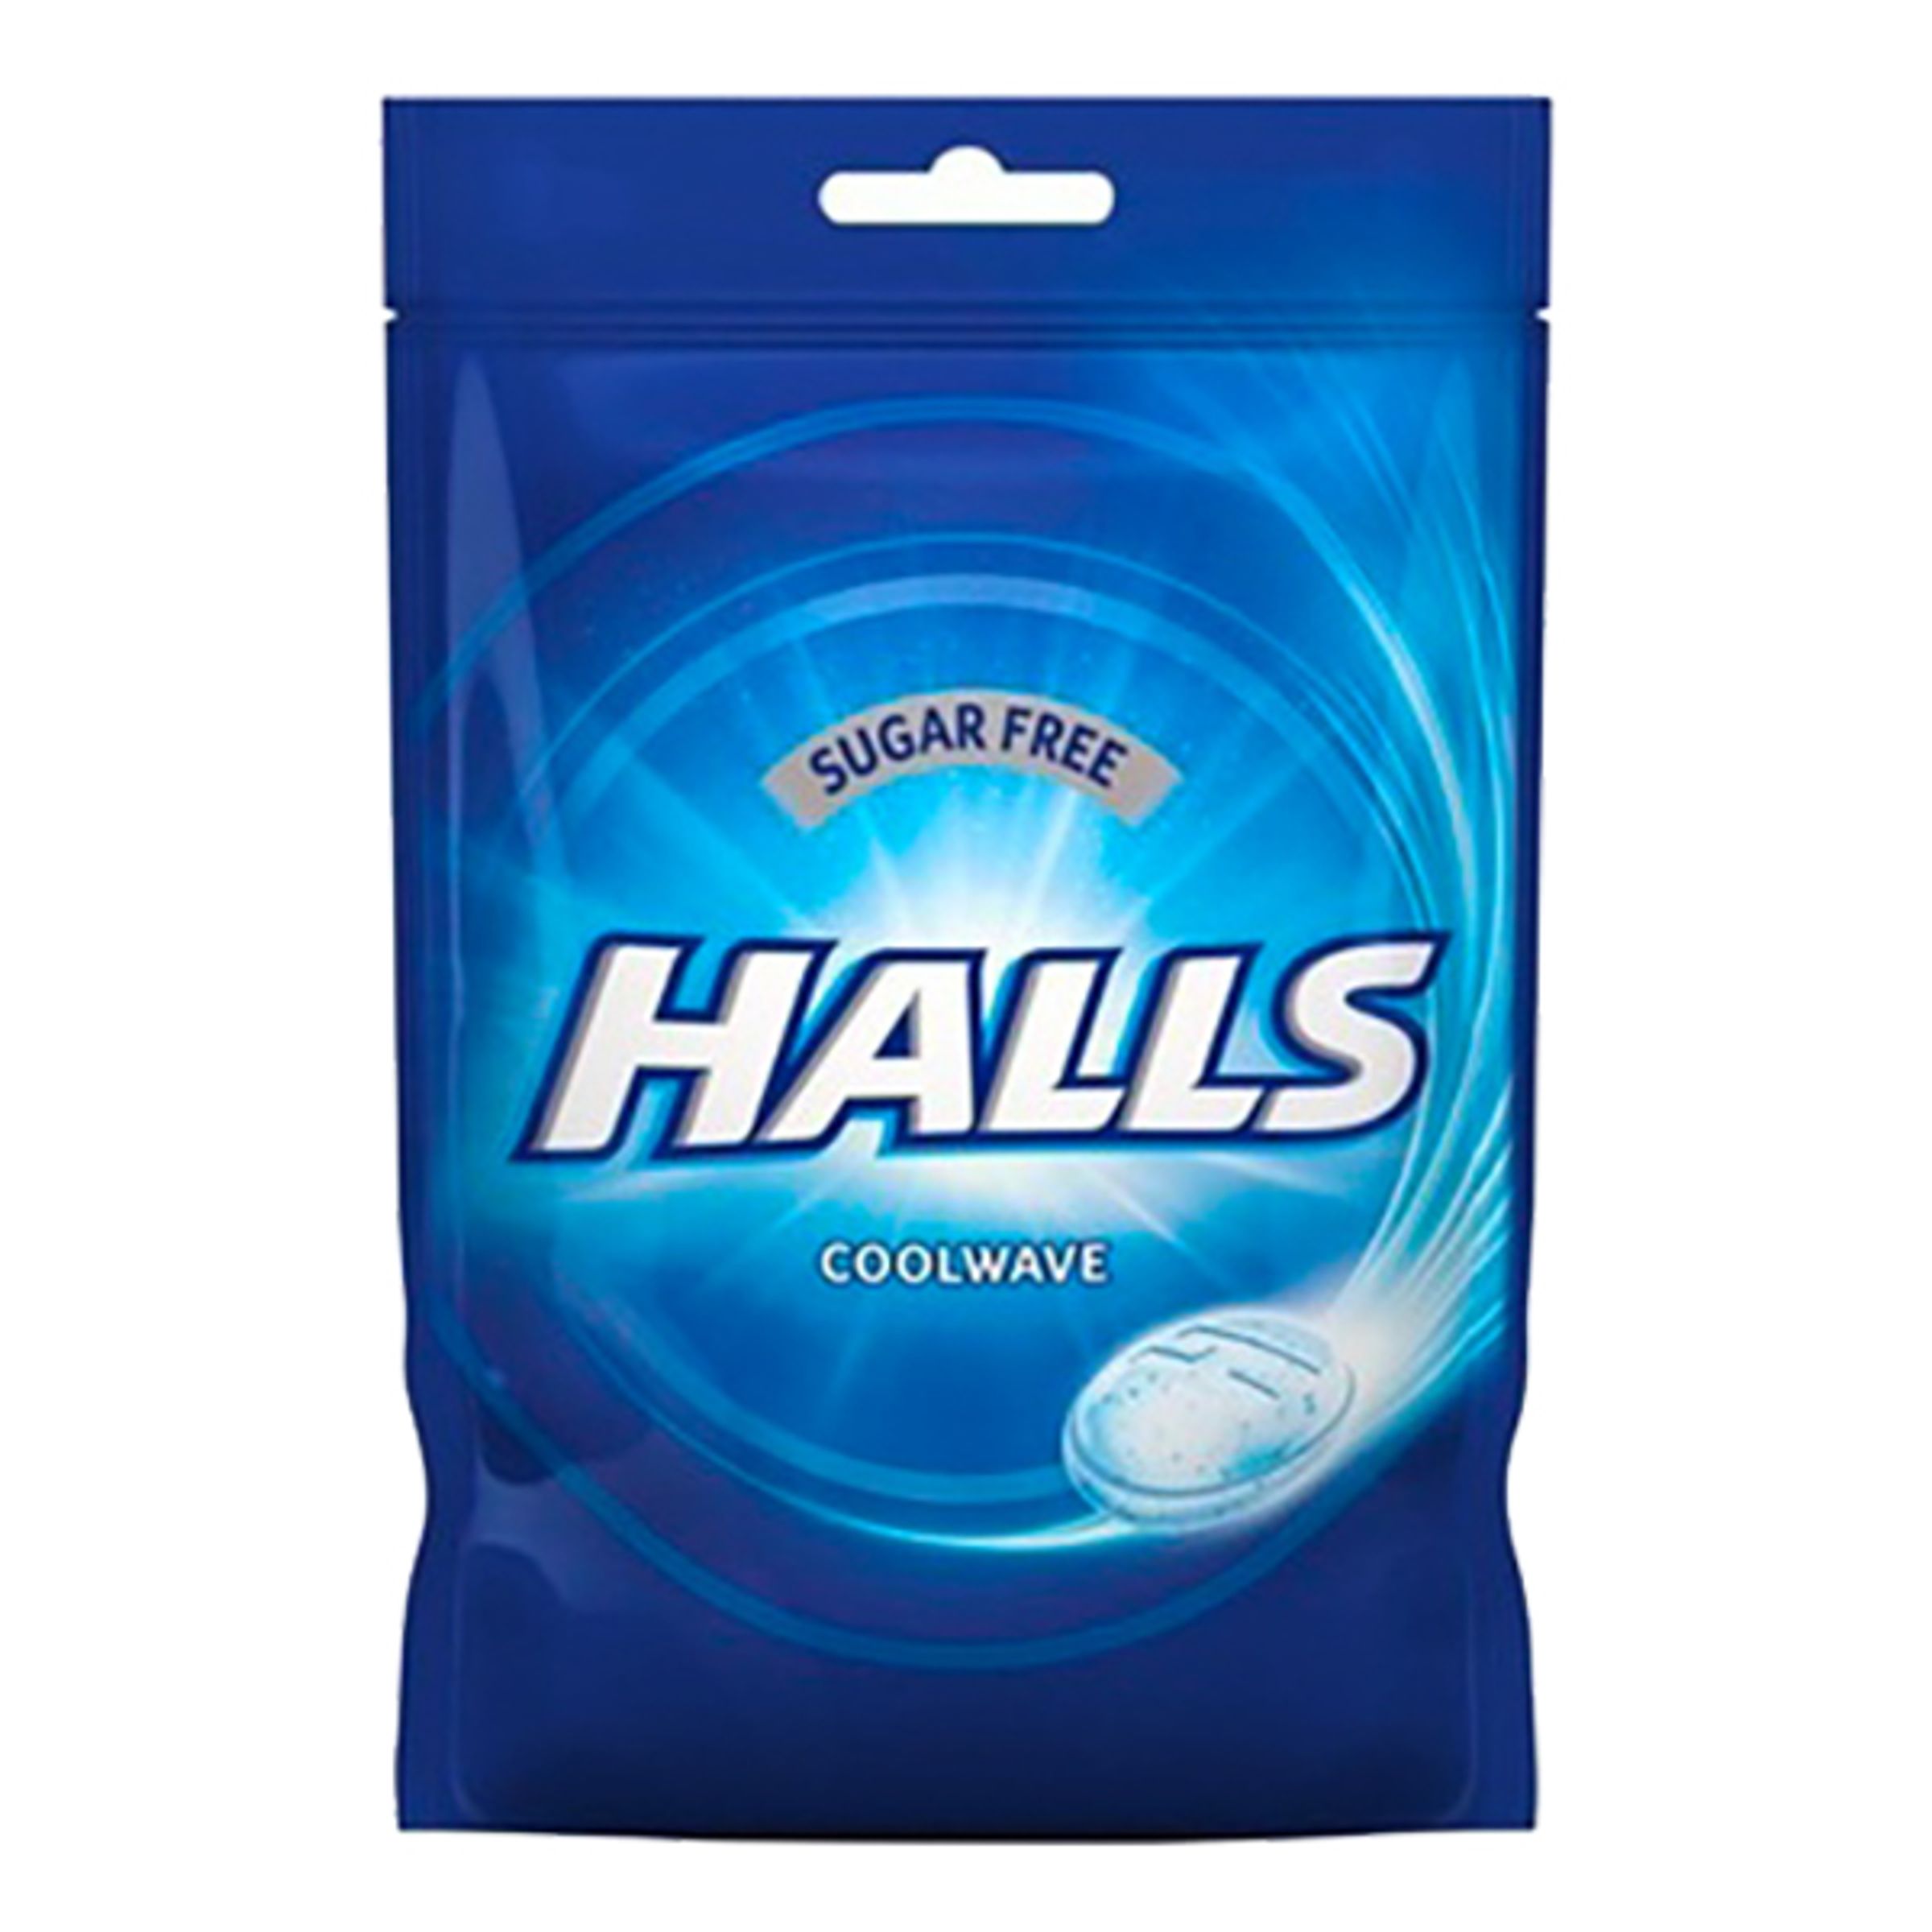 Halls Coolwave Sugar Free Halstabletter